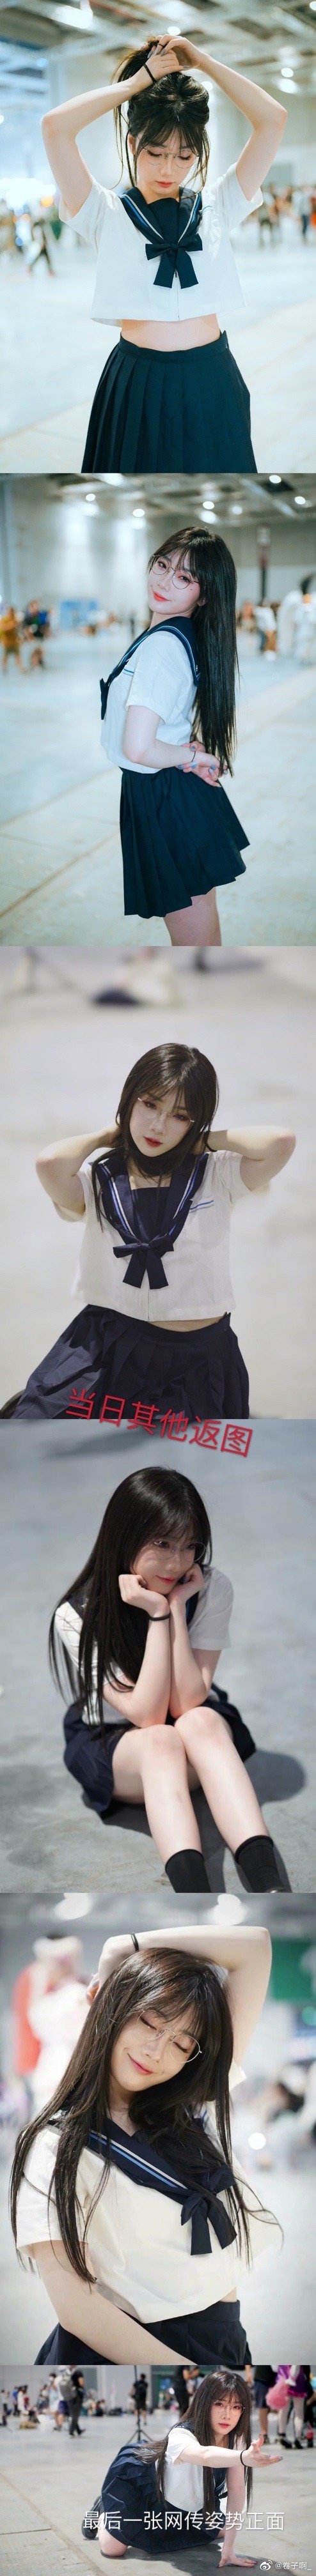 上海漫展女生穿jk摆pose惹热议本人回应没想到有人跑到后方拍摄